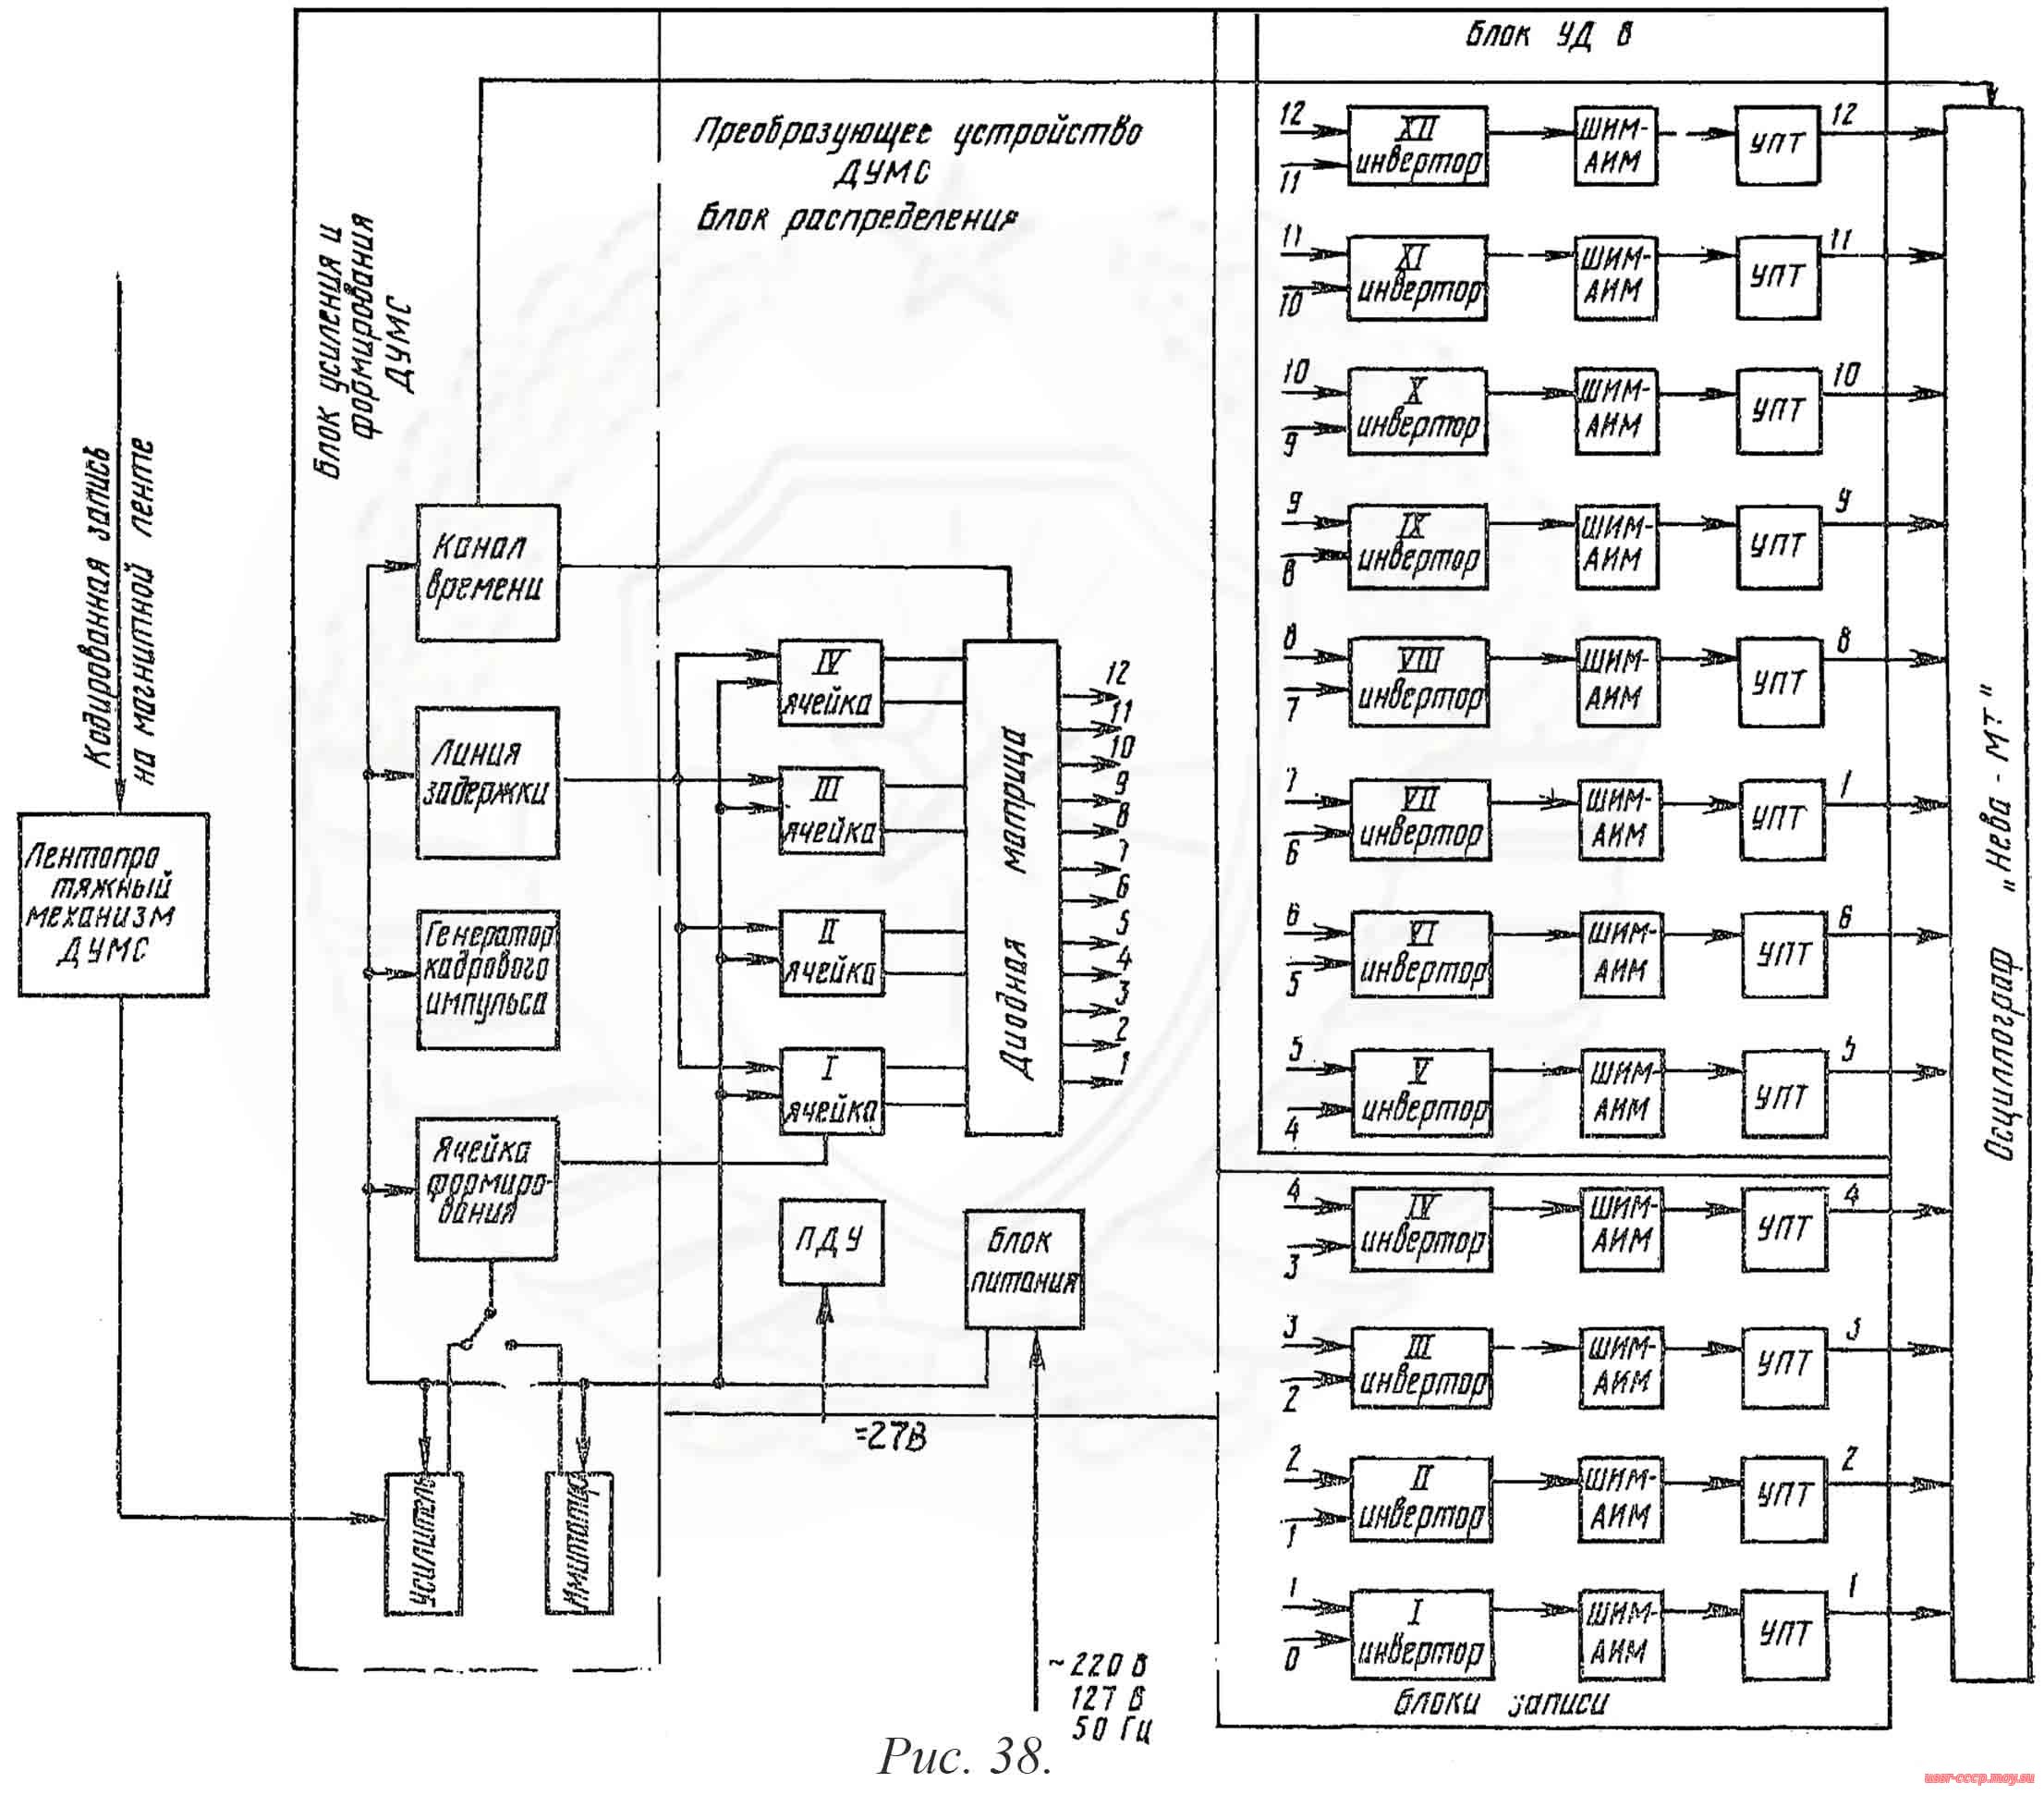  Рис. 38. Схема функциональная устройства декодирования ДУМС с блоком УД-8.